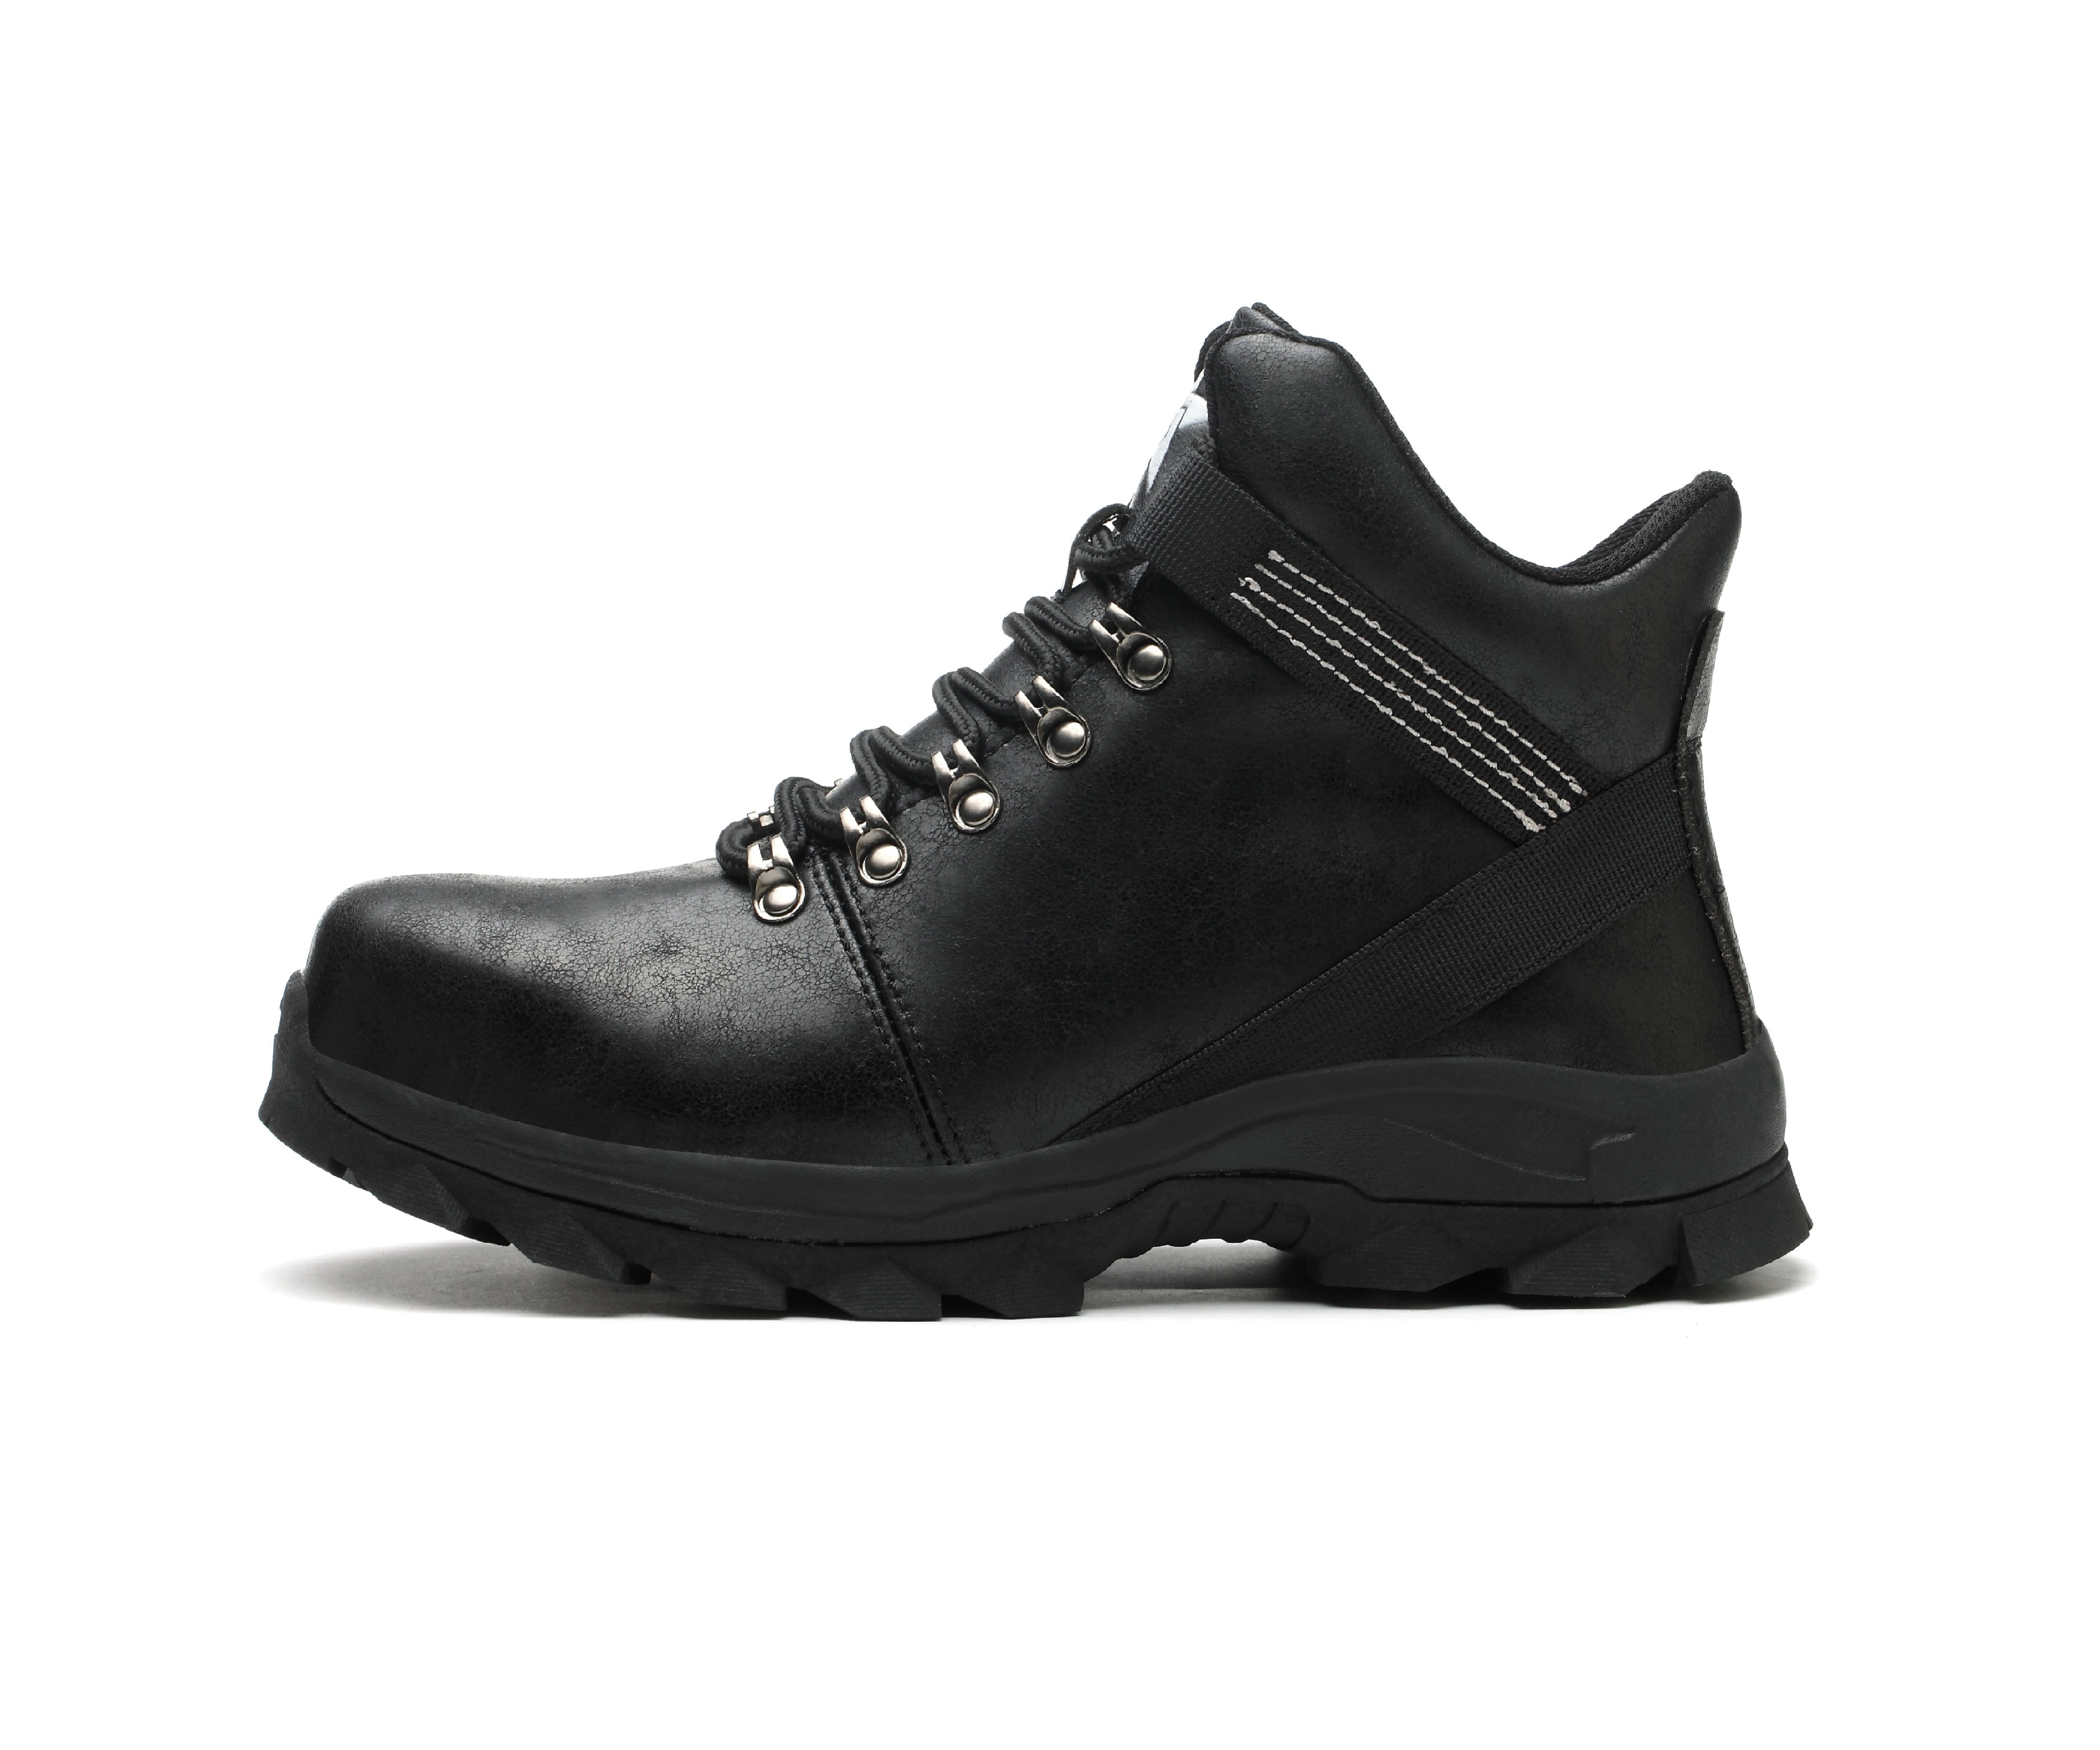 Men's Steel Toe Safety Boots - Model 915 SafeAlex.com